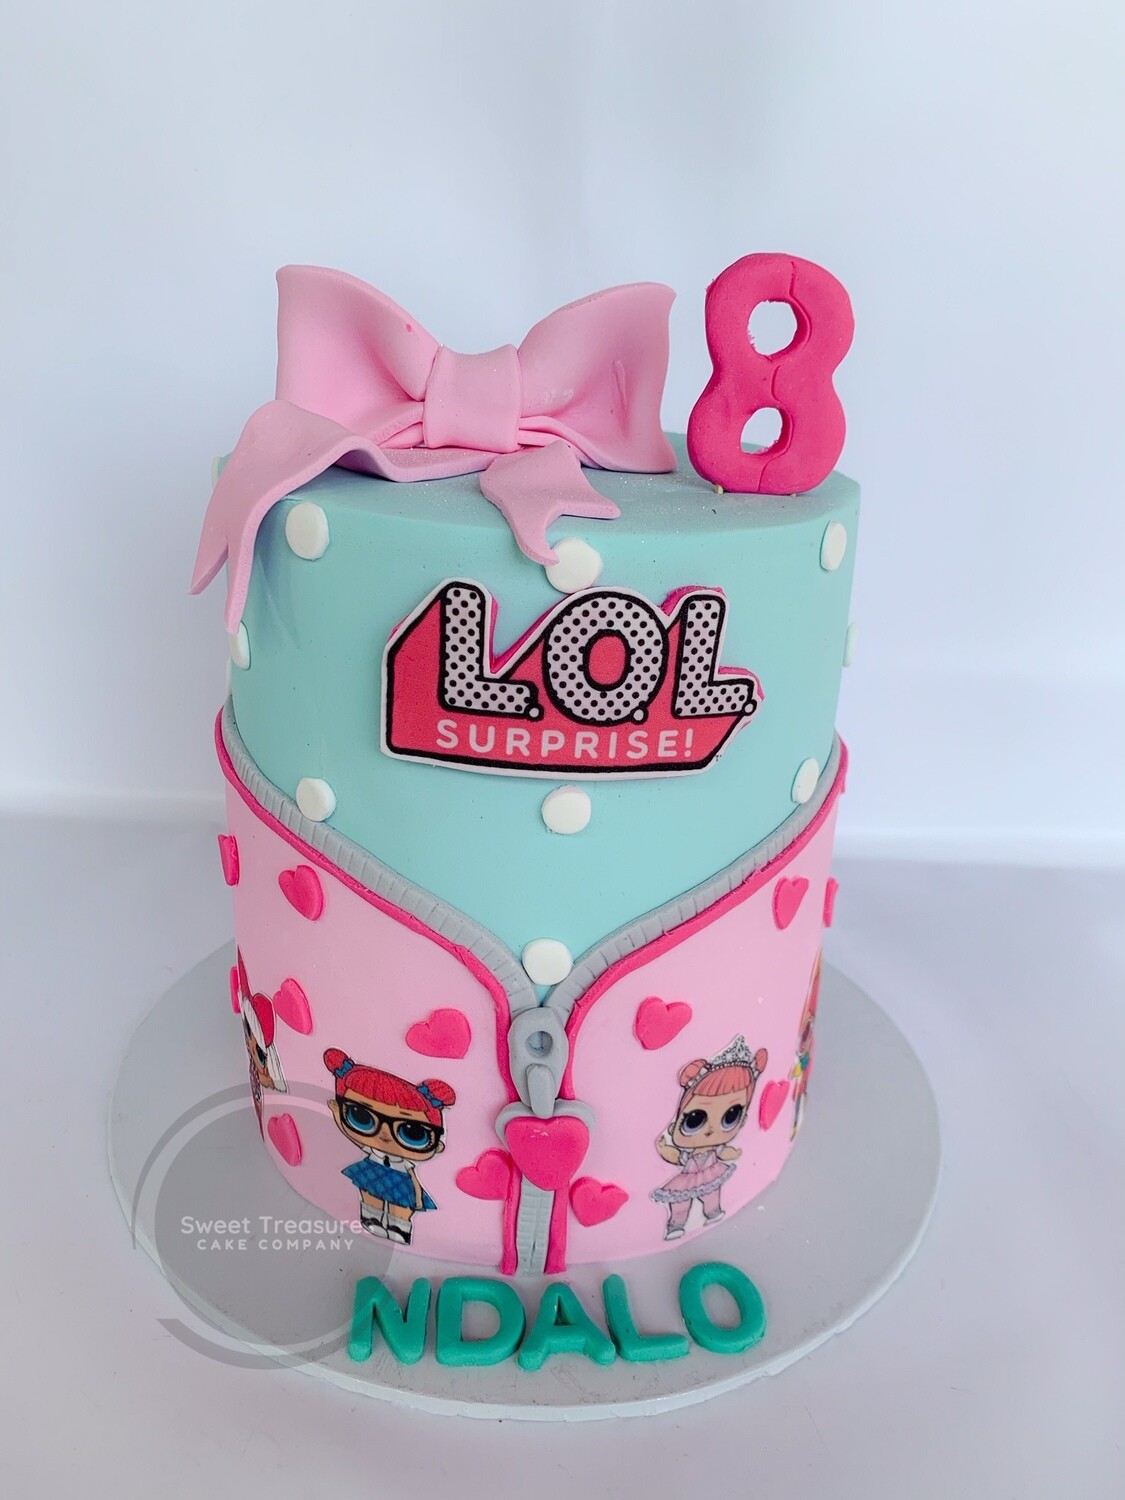 LOL surprise Single tier cake